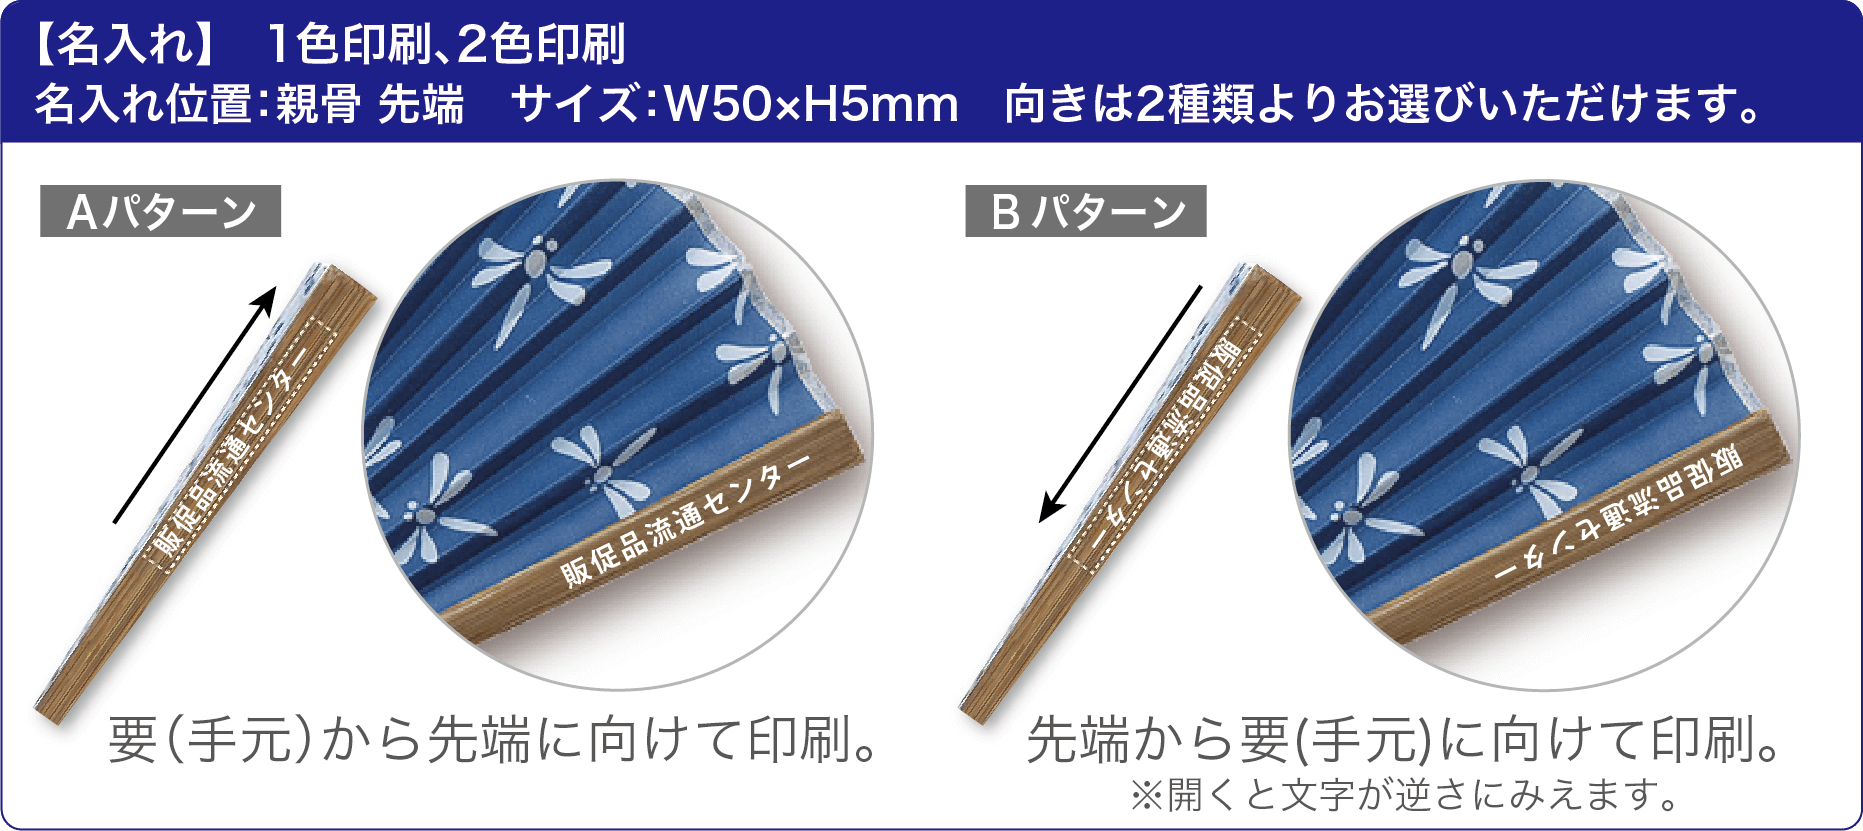 【名入れ】 すす竹和扇子の名入れは親骨の先端にインクで印刷となります。印刷位置：親骨　印刷サイズ：W50×H5mm　向きは2種類よりお選びいただけます。